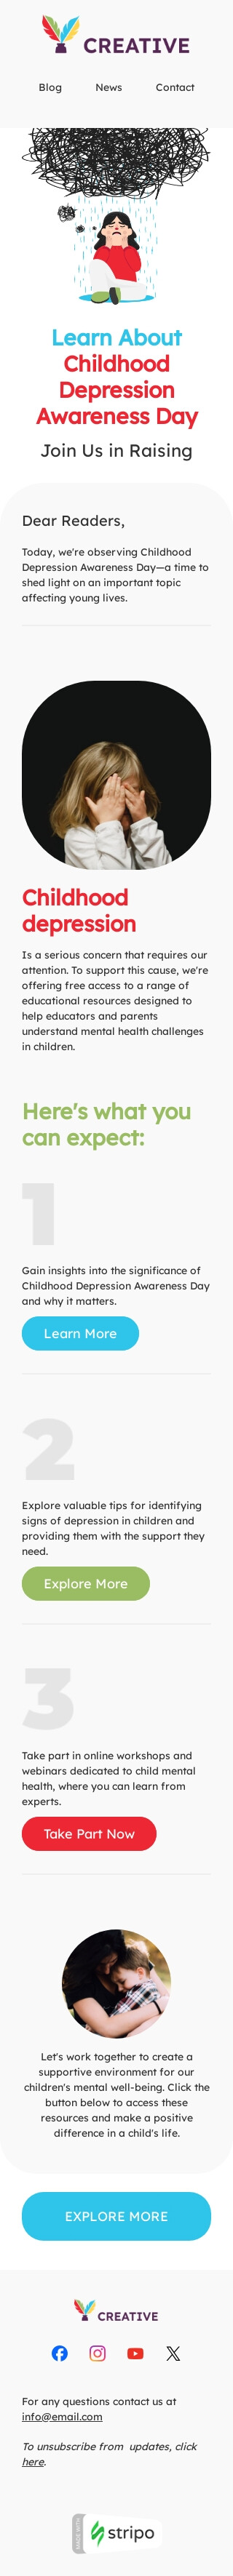 Modèle de courrier électronique Journée de sensibilisation à la dépression infantile «Dépression infantile» pour le secteur publications & blogging Affichage mobile